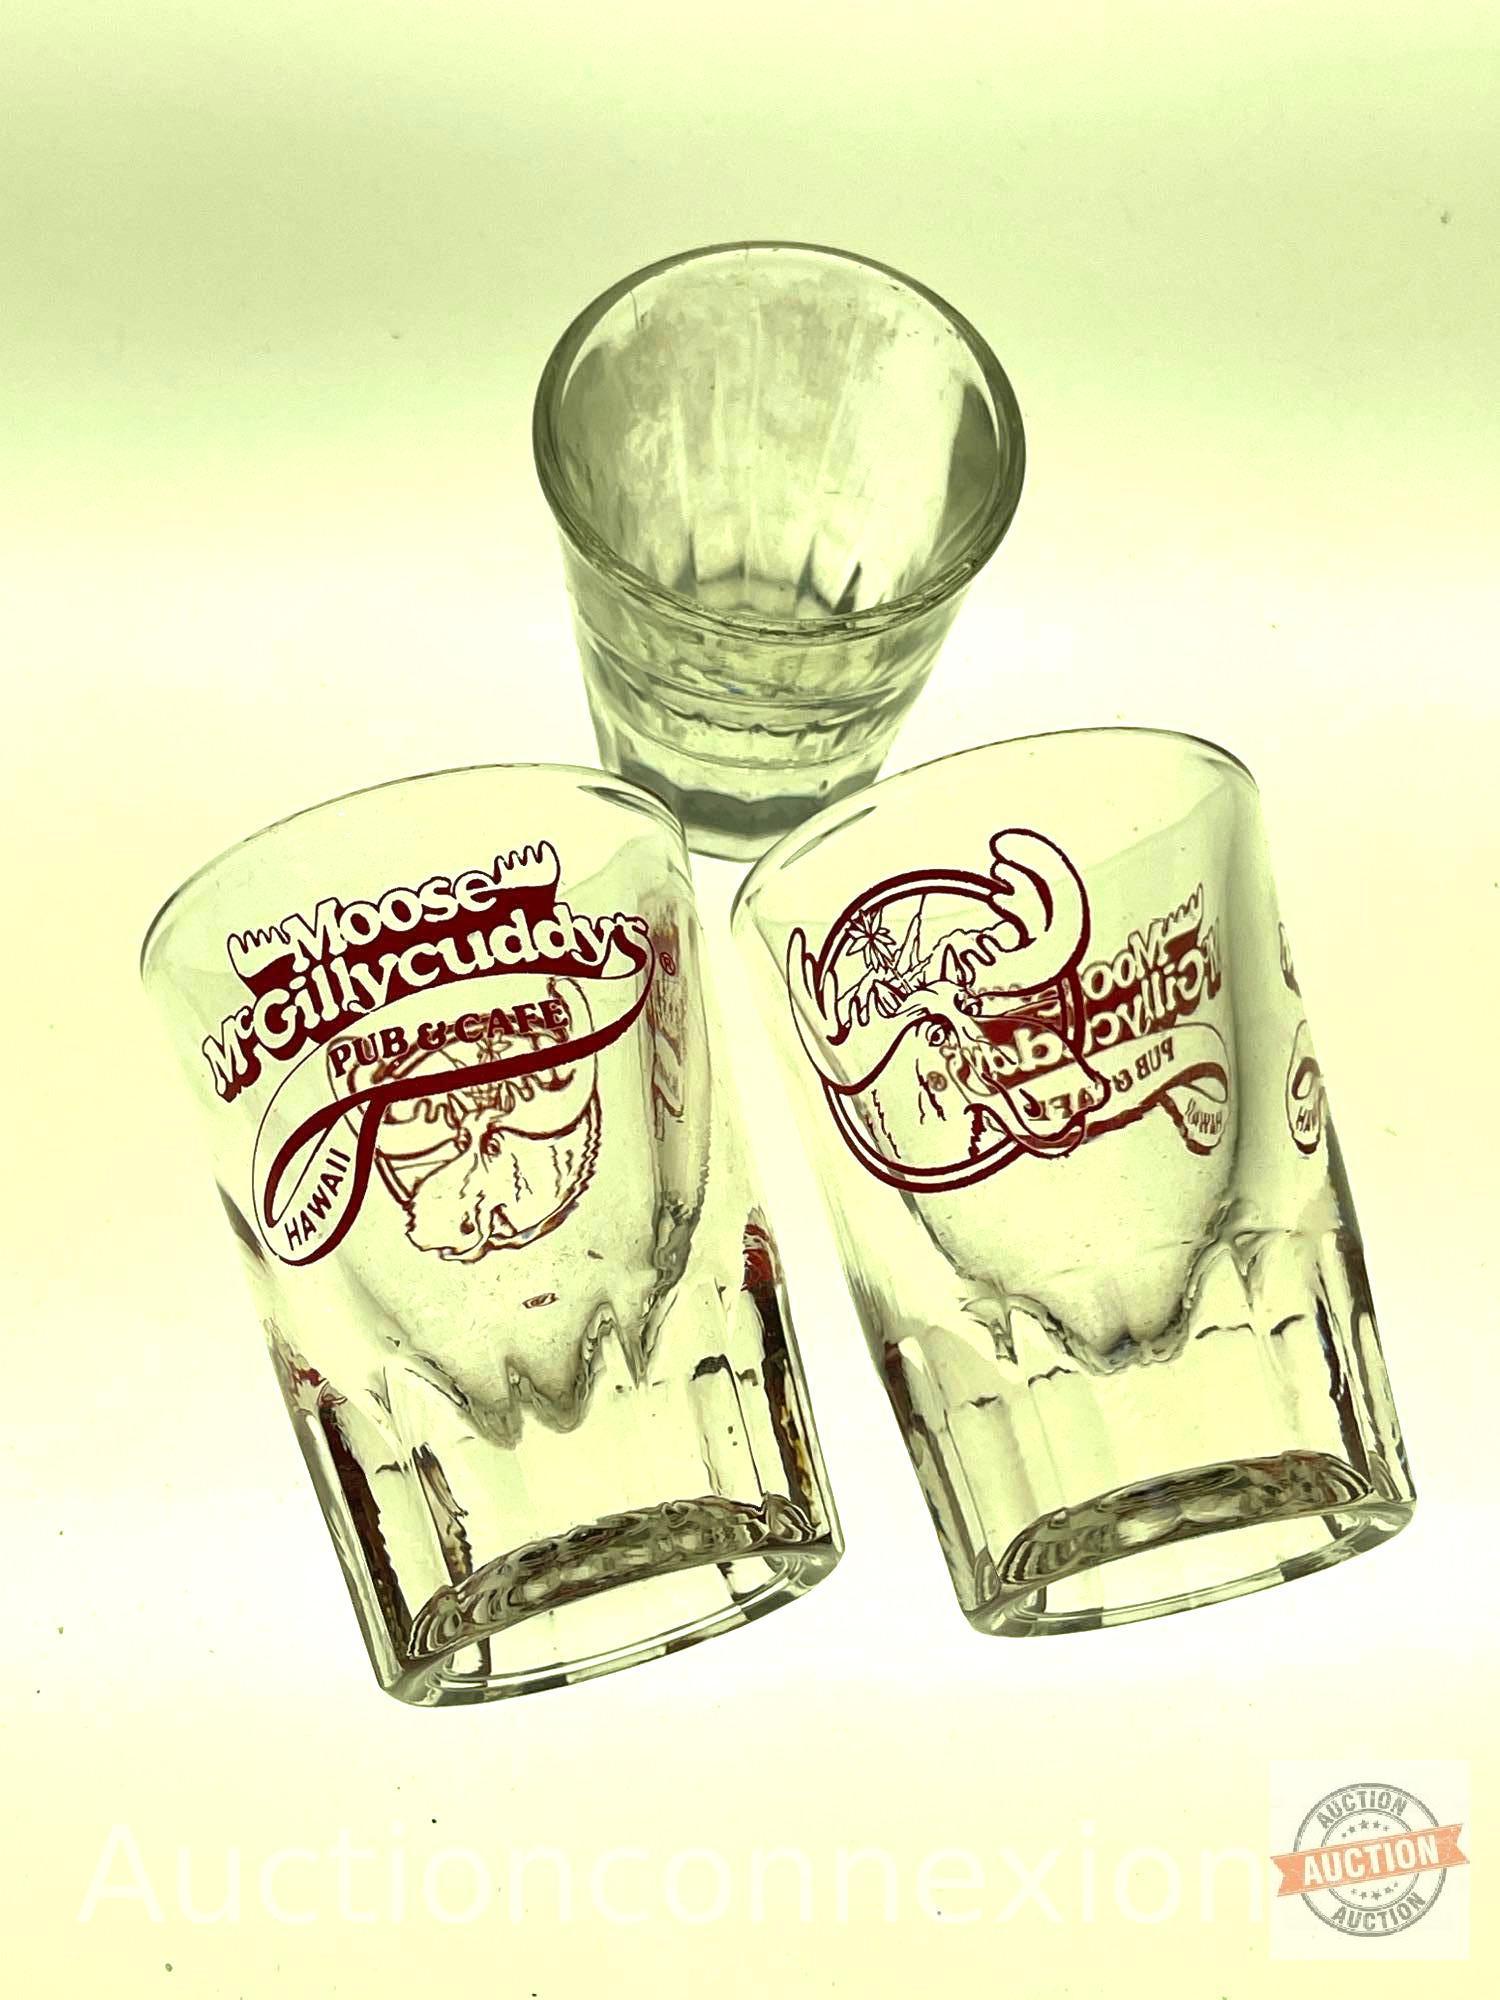 Gaymer's Olde English Cyder Bottle and 3 shot glasses